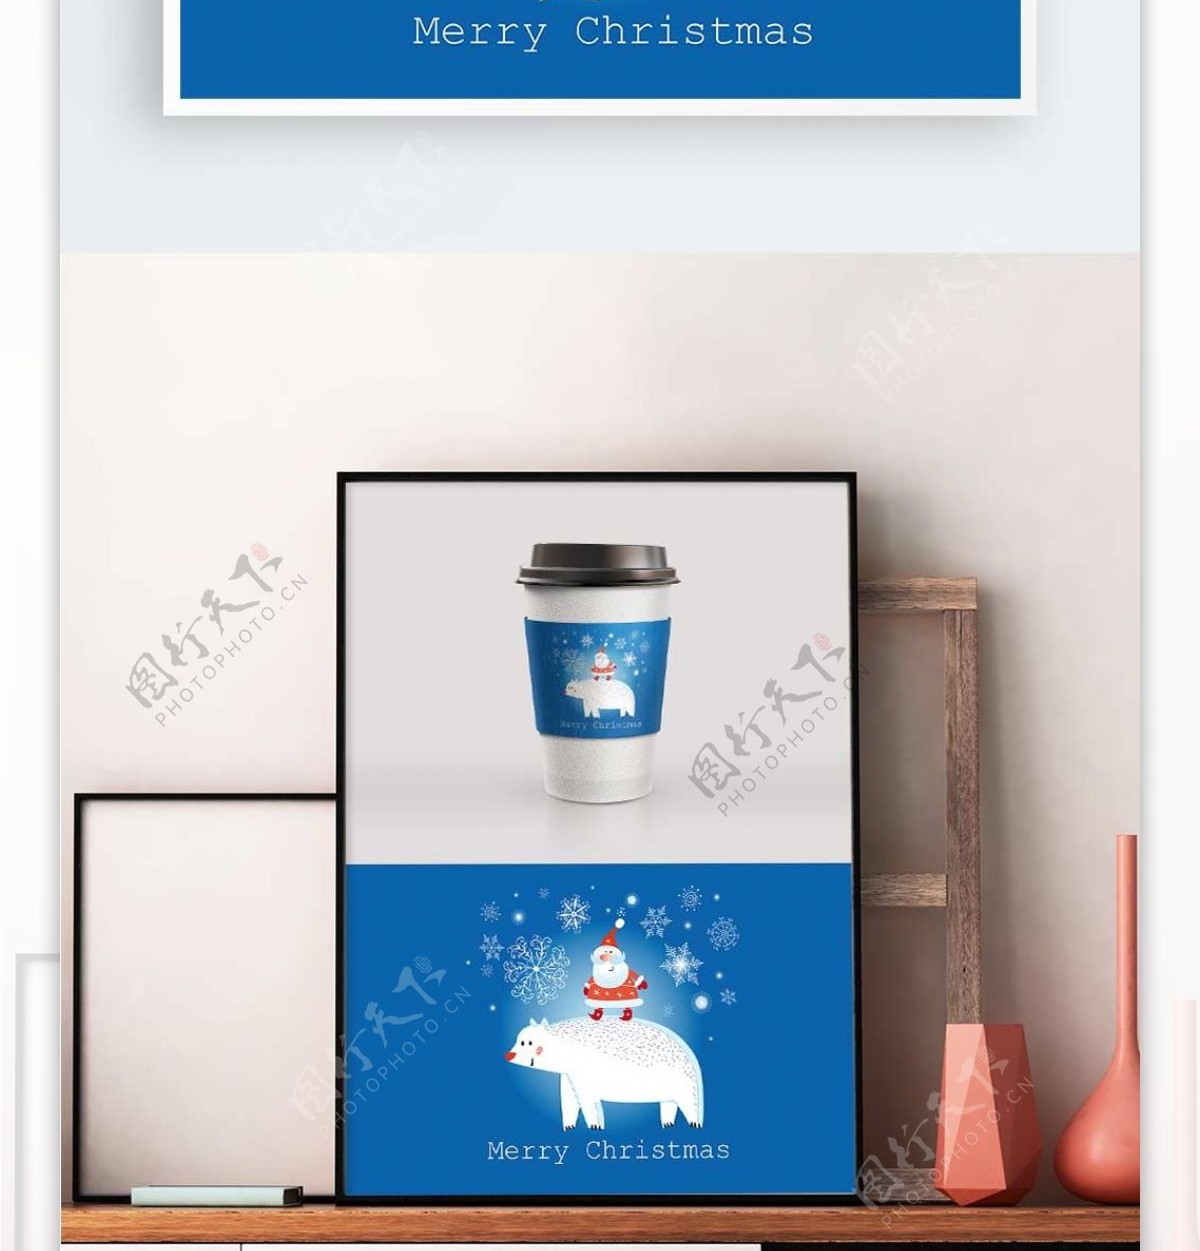 蓝色圣诞老人和白熊杯套设计